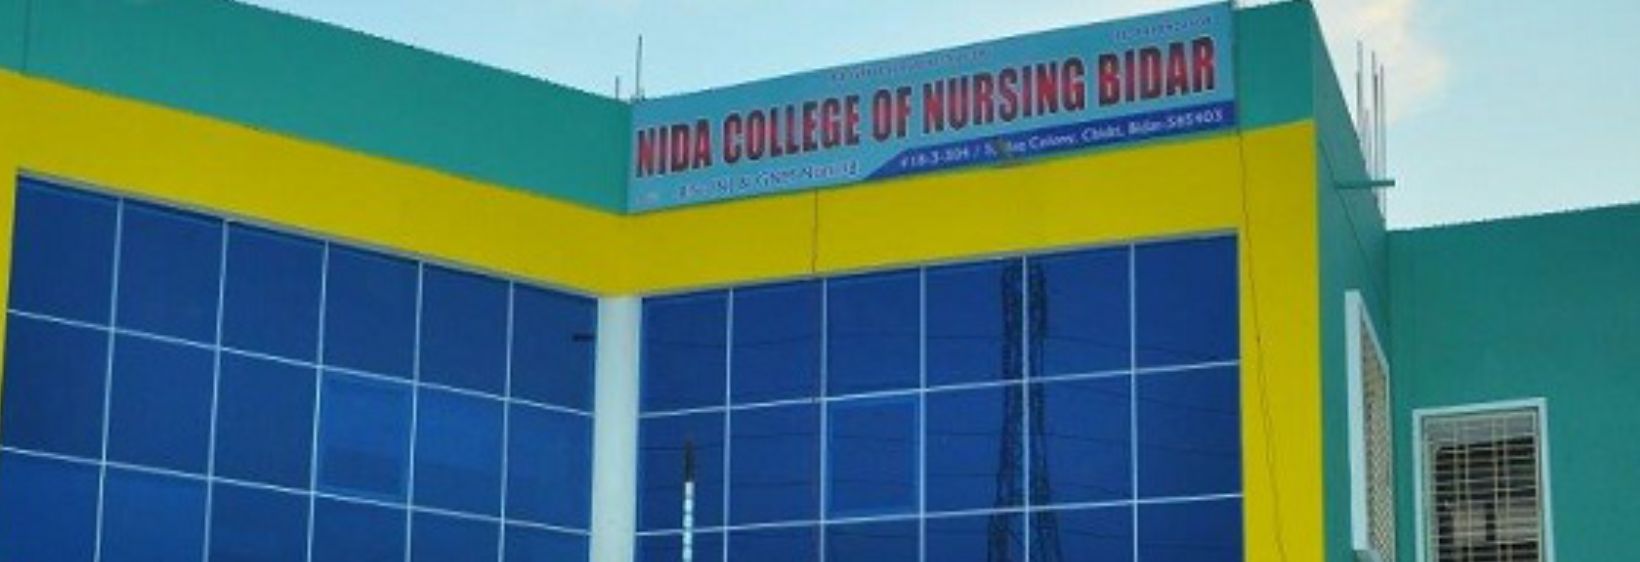 Nida College of Nursing - Bidar